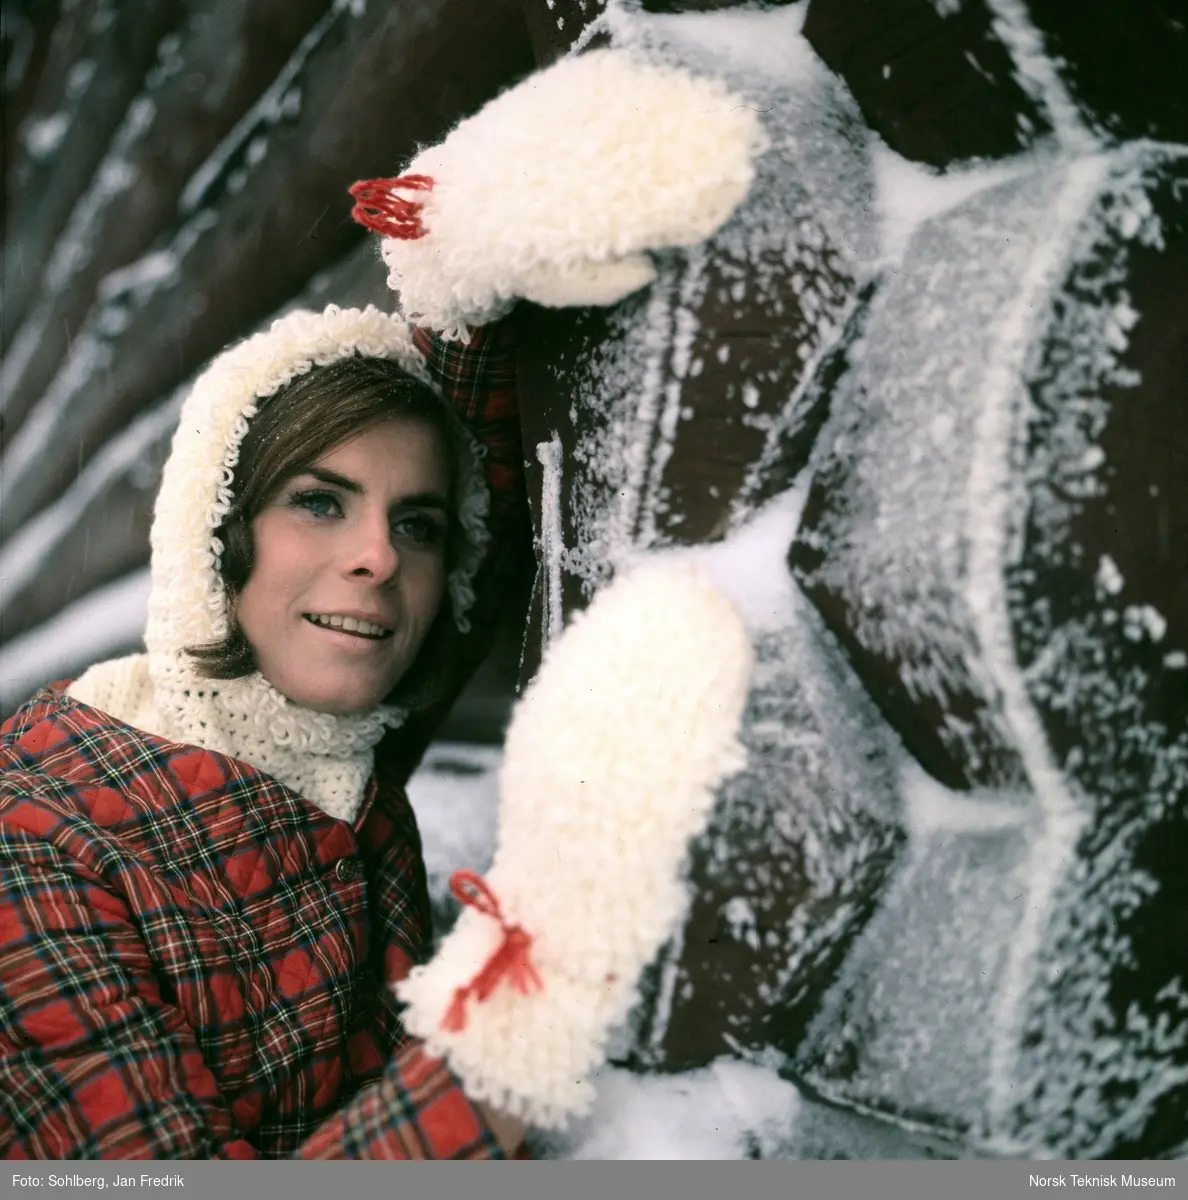 Kvinnelig modell viser vintermote. Hun har en hvit heklet genser med hette, laget av tykt, loddent garn under en skotsk-rutete vattert jakke. Store votter av samme type garn som hettegenseren. Hun lener seg mot en vegg av laftet tømmer.